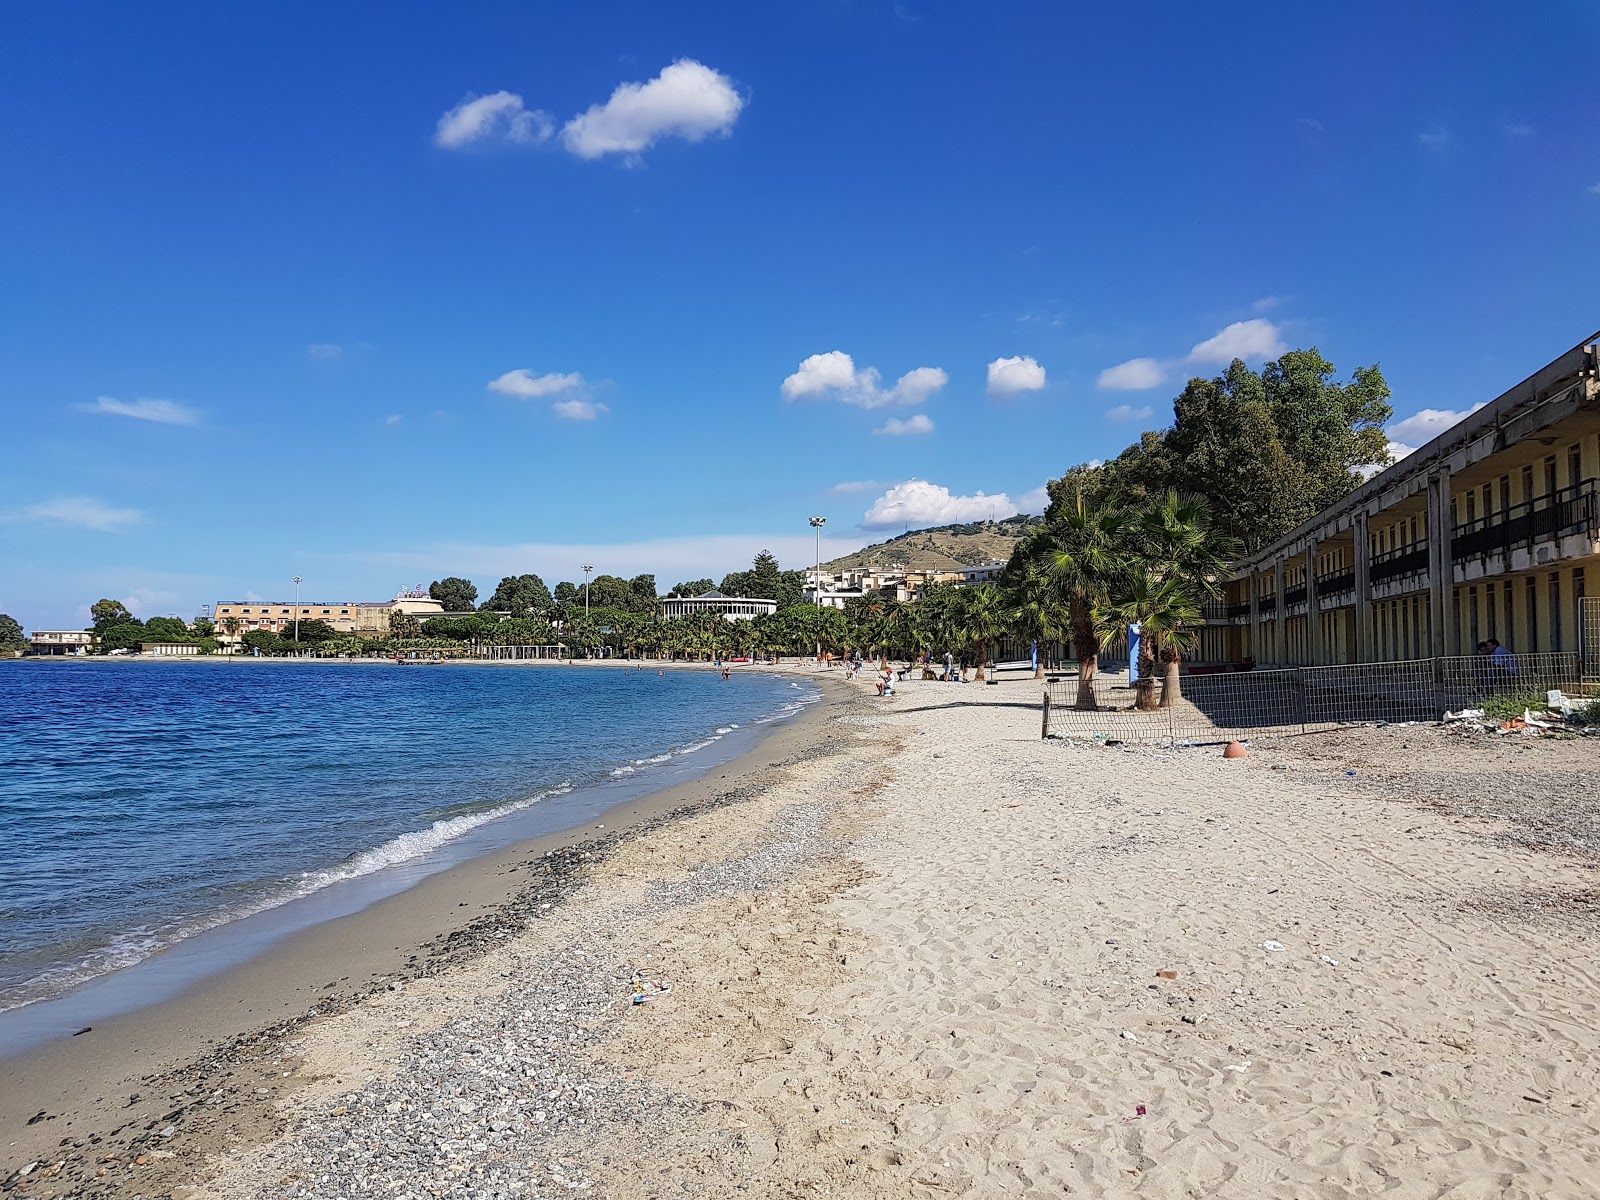 Fotografie cu Reggio Calabria beach cu o suprafață de nisip maro